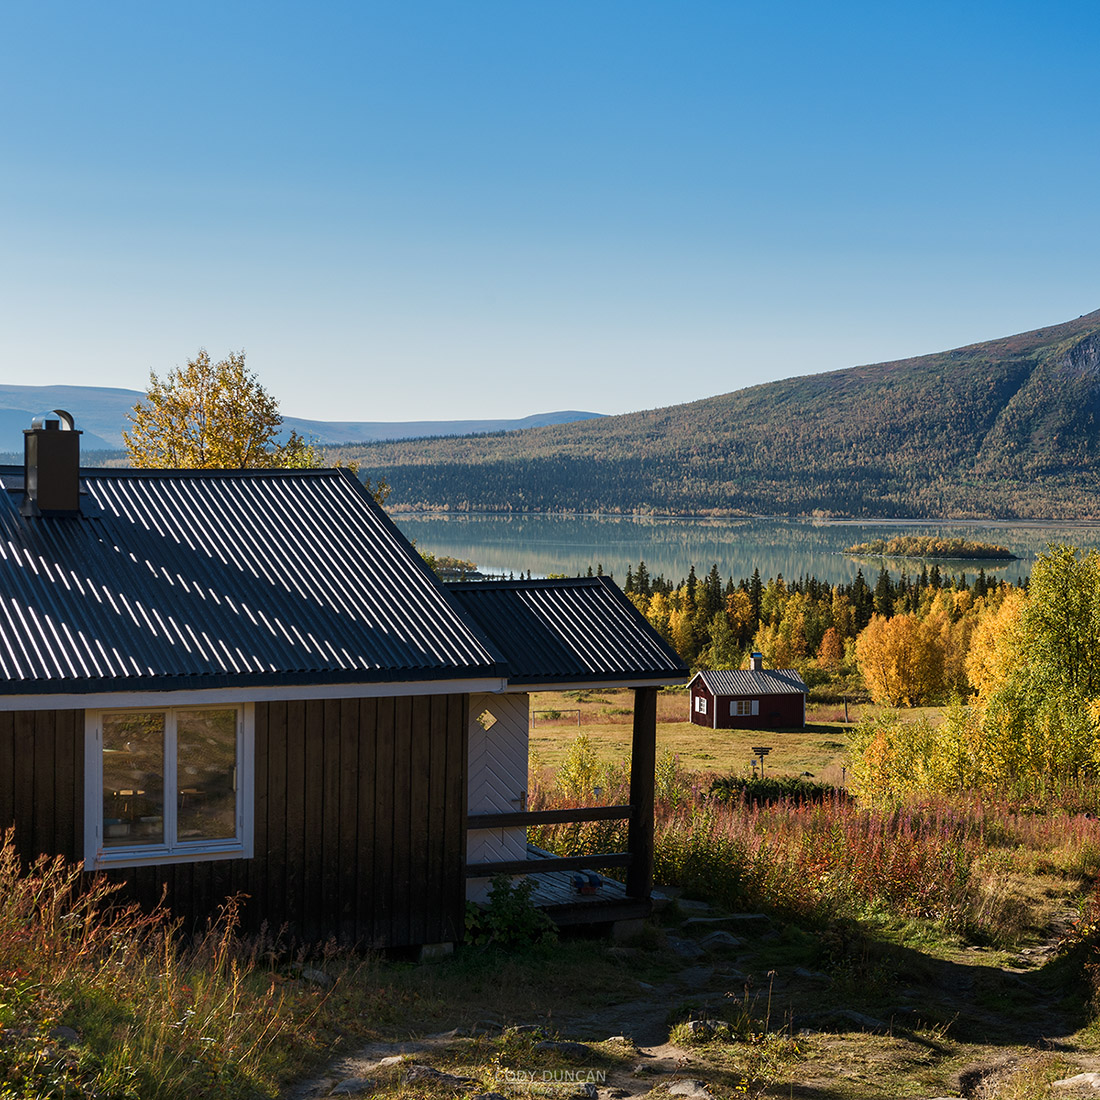 STF Aktse hut, kungsleden trail, Lapland, Sweden